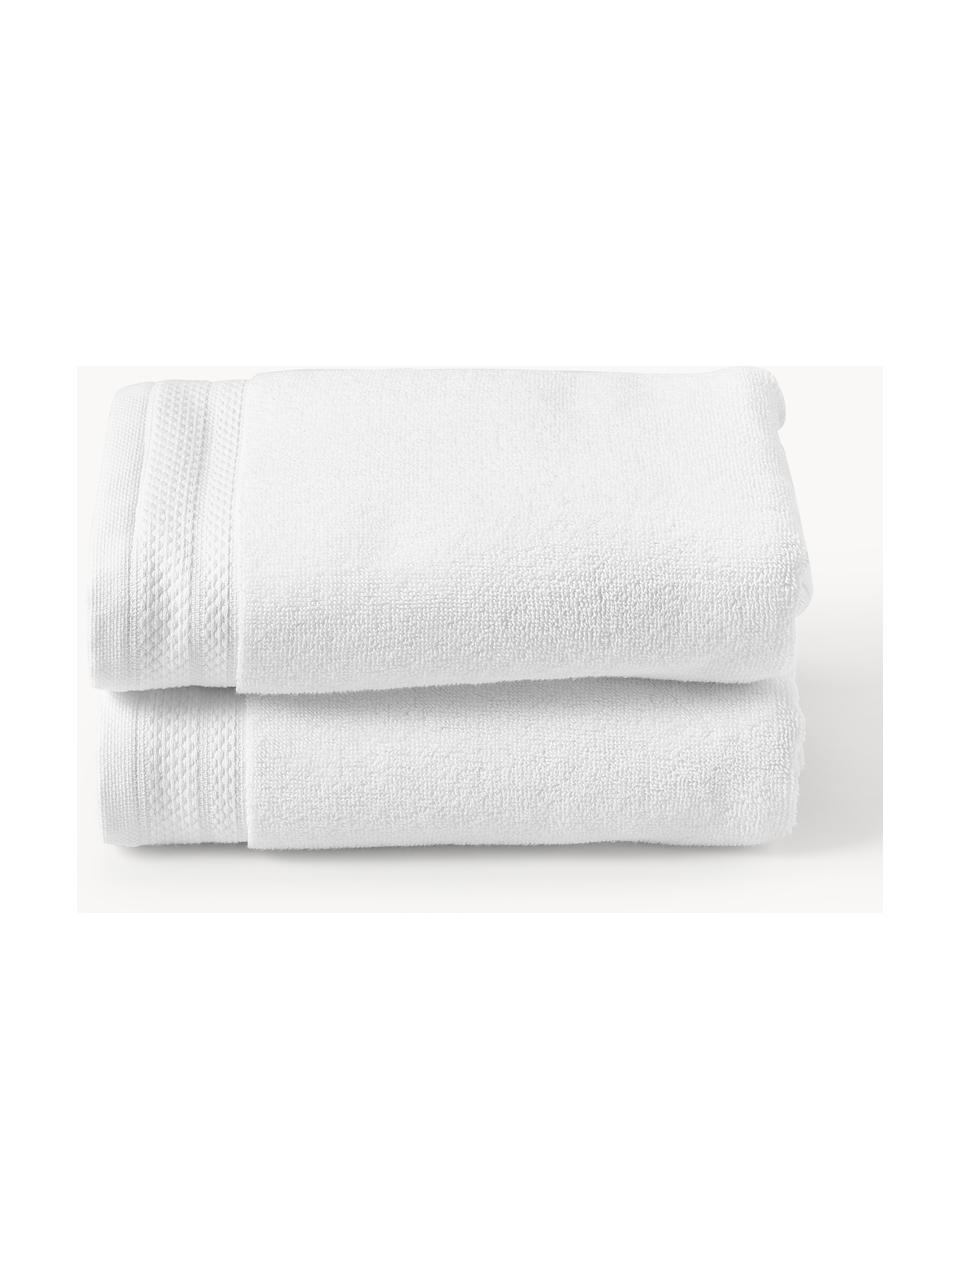 Ręcznik z bawełny organicznej Premium, różne rozmiary, Biały, Ręcznik do rąk, S 50 x D 100 cm, 2 szt.